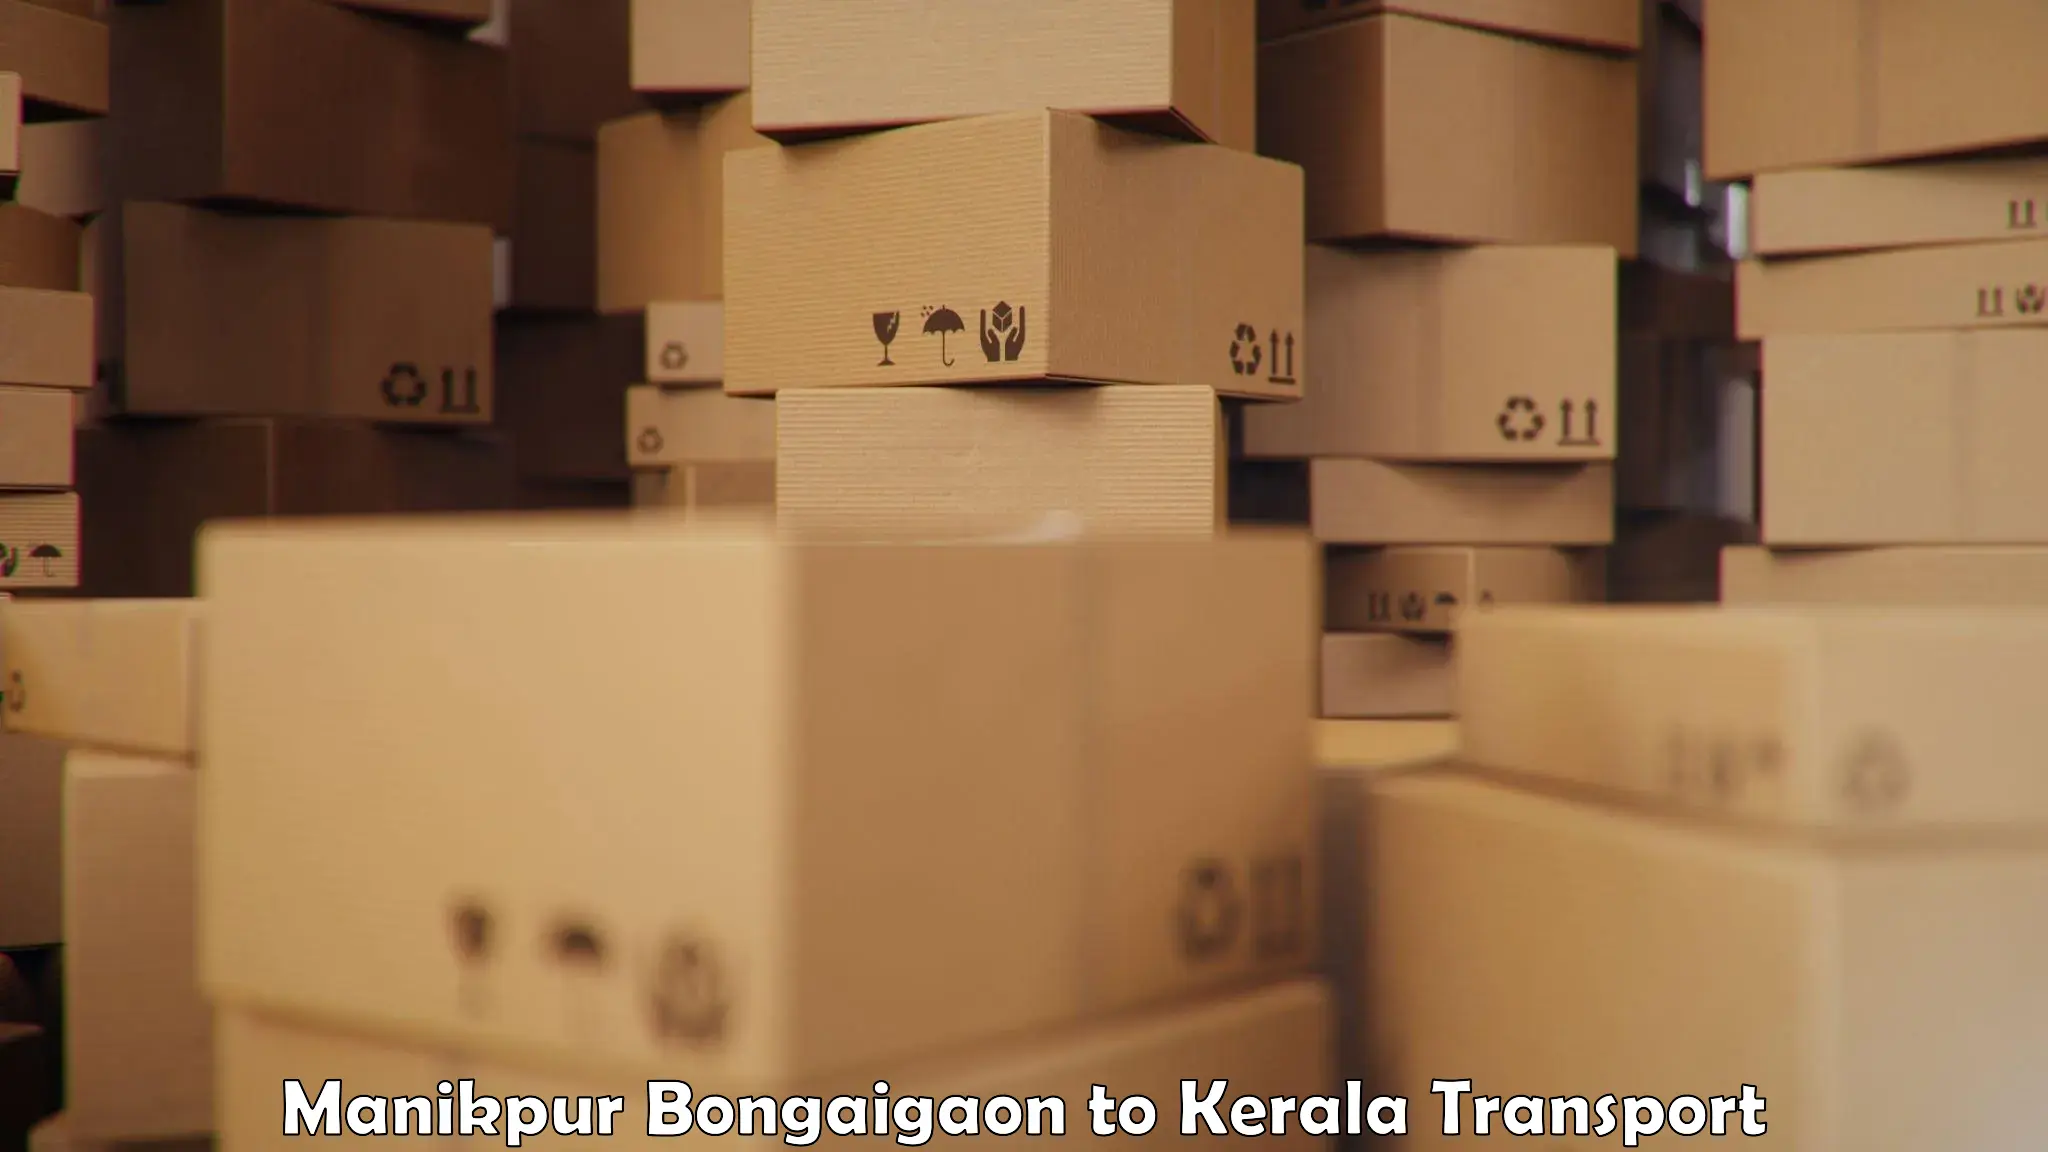 Daily parcel service transport Manikpur Bongaigaon to Kannapuram